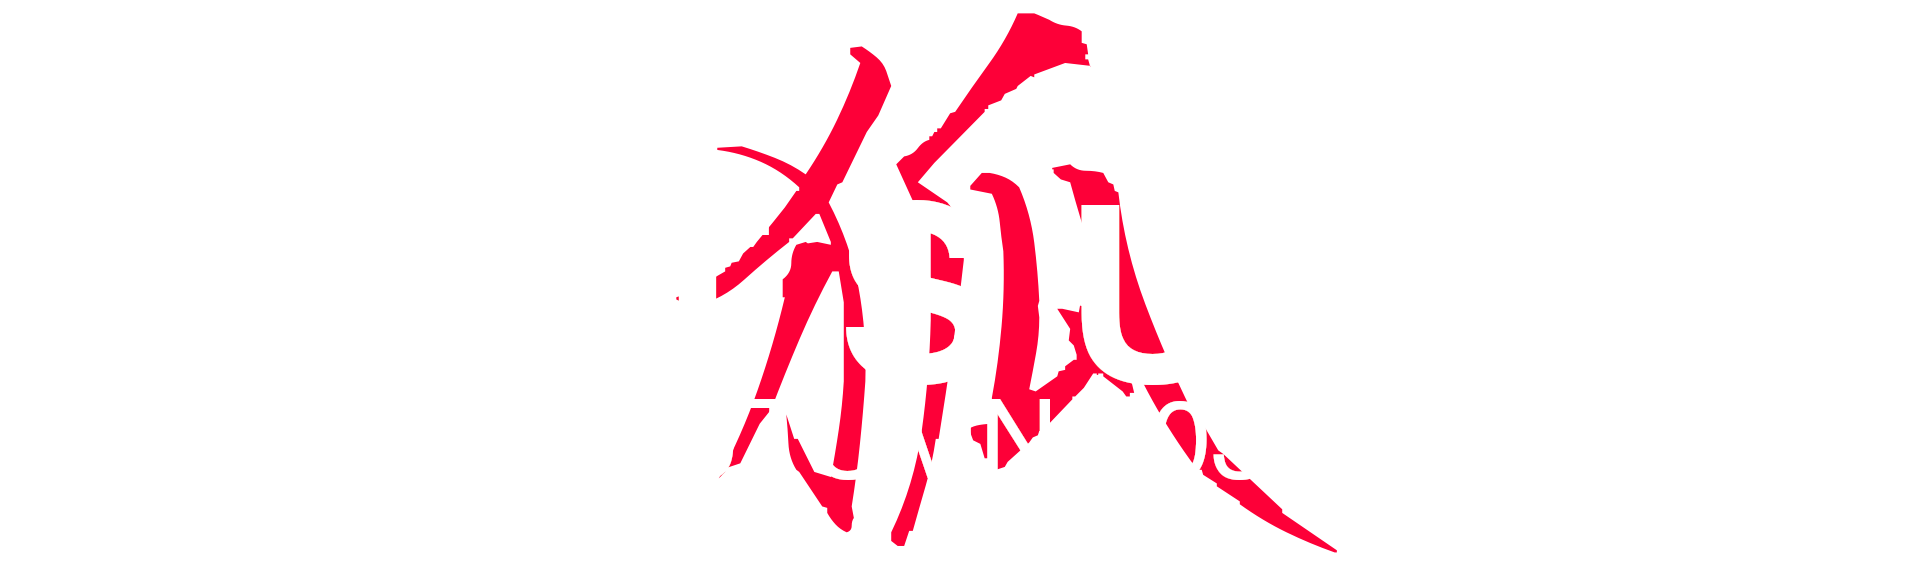 KITSUNE - AUTUMN 2032